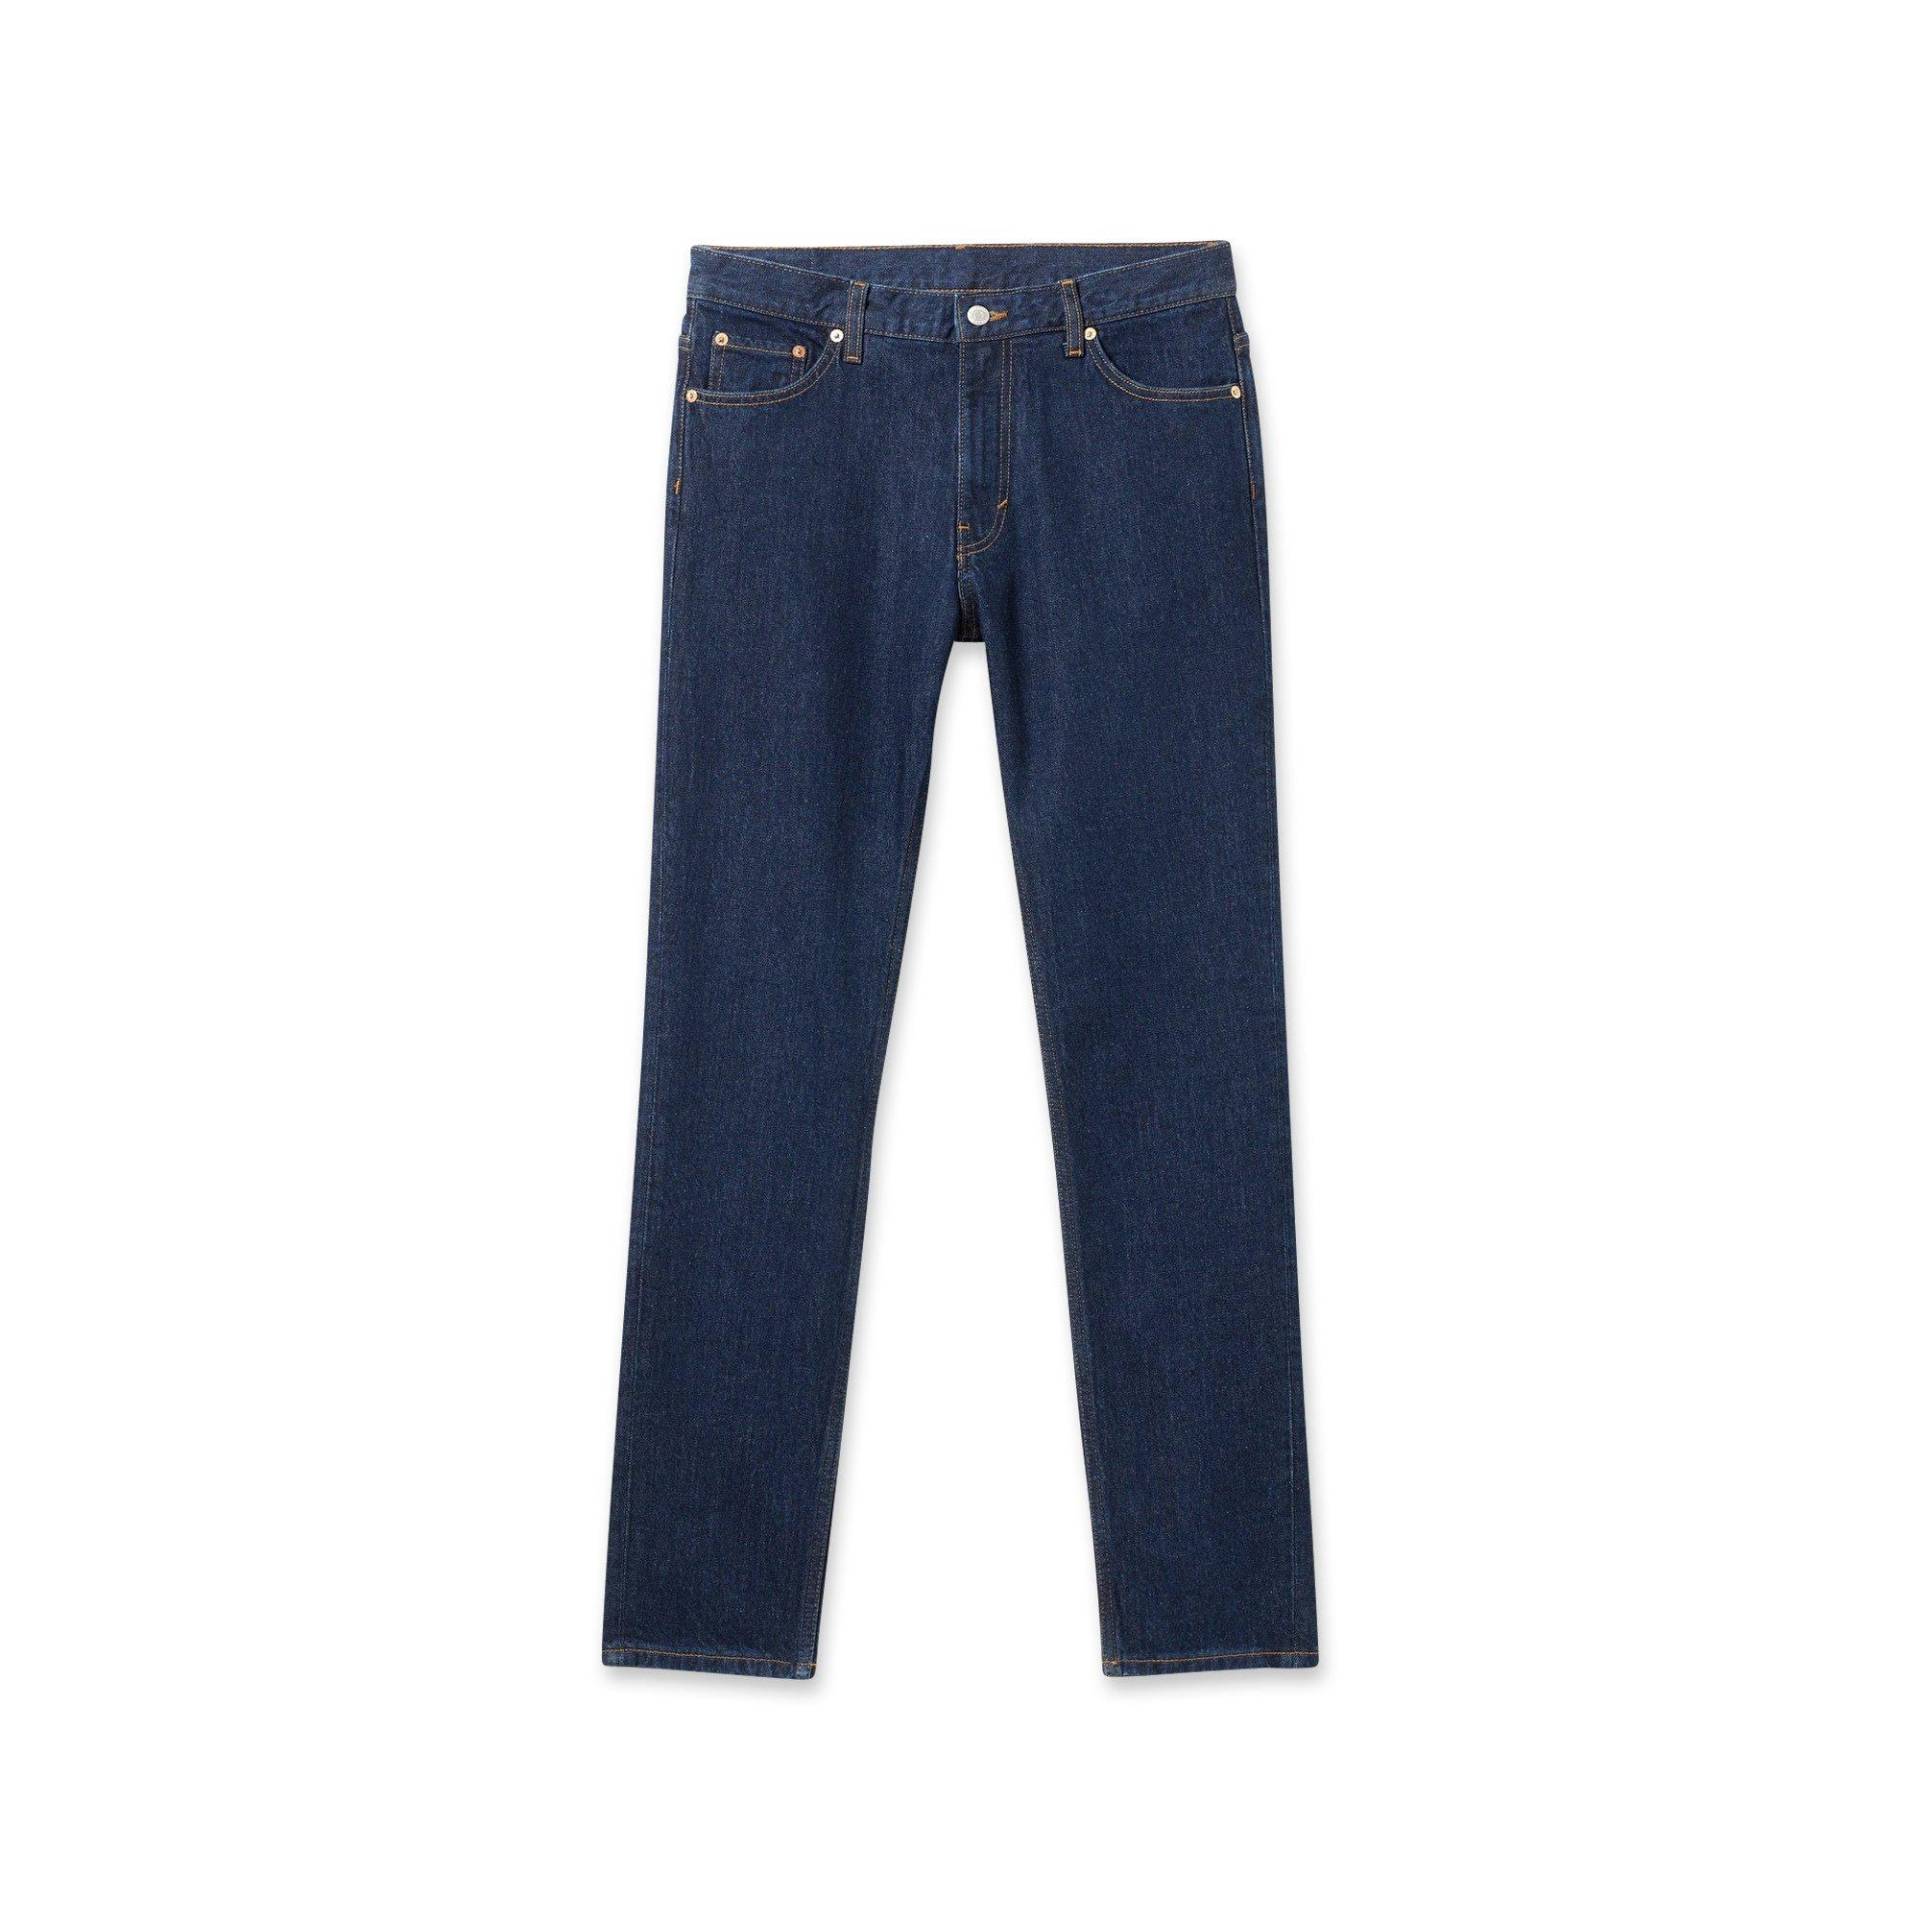 Jeans, Tapered Fit Herren Blau L30/W30 von WEEKDAY